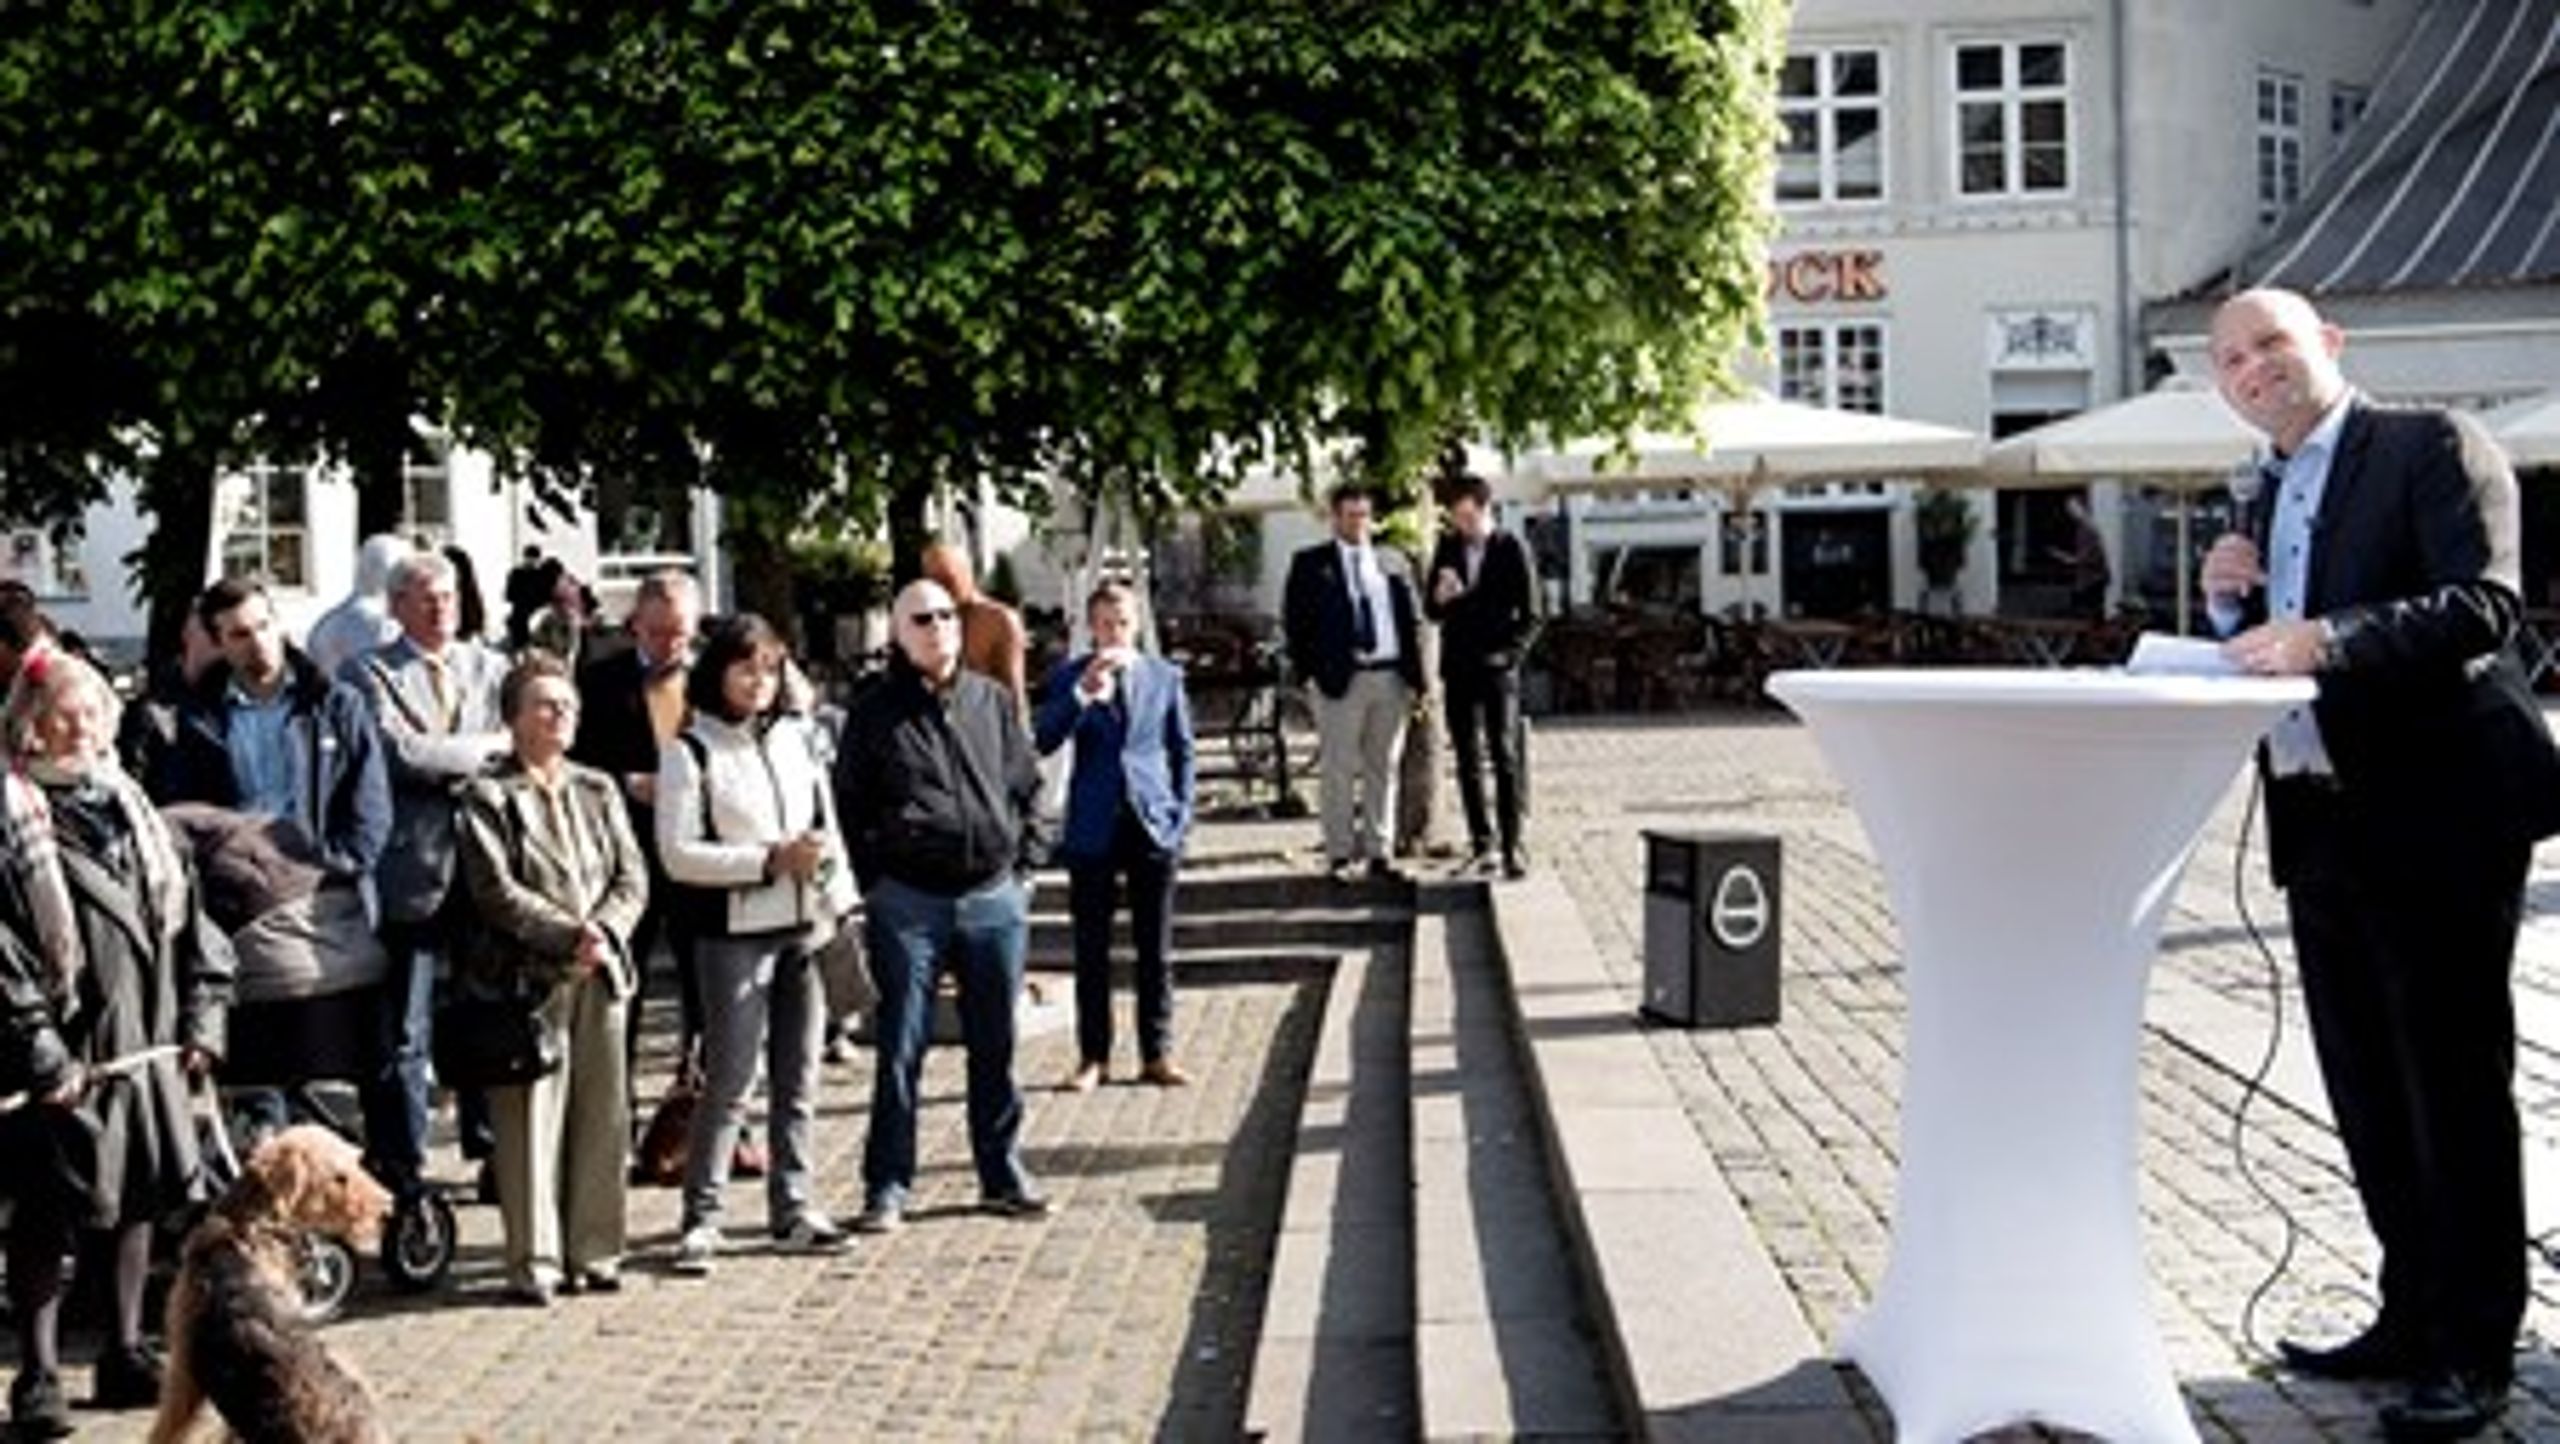 De Konservatives formand Søren Pape Poulsen grundlovstale ved Mindeankeret i Nyhavn. Senere taler han på&nbsp;Blåkildegård i Høje Taastrup og på&nbsp;Niels Bugges Kro i Viborg.&nbsp;